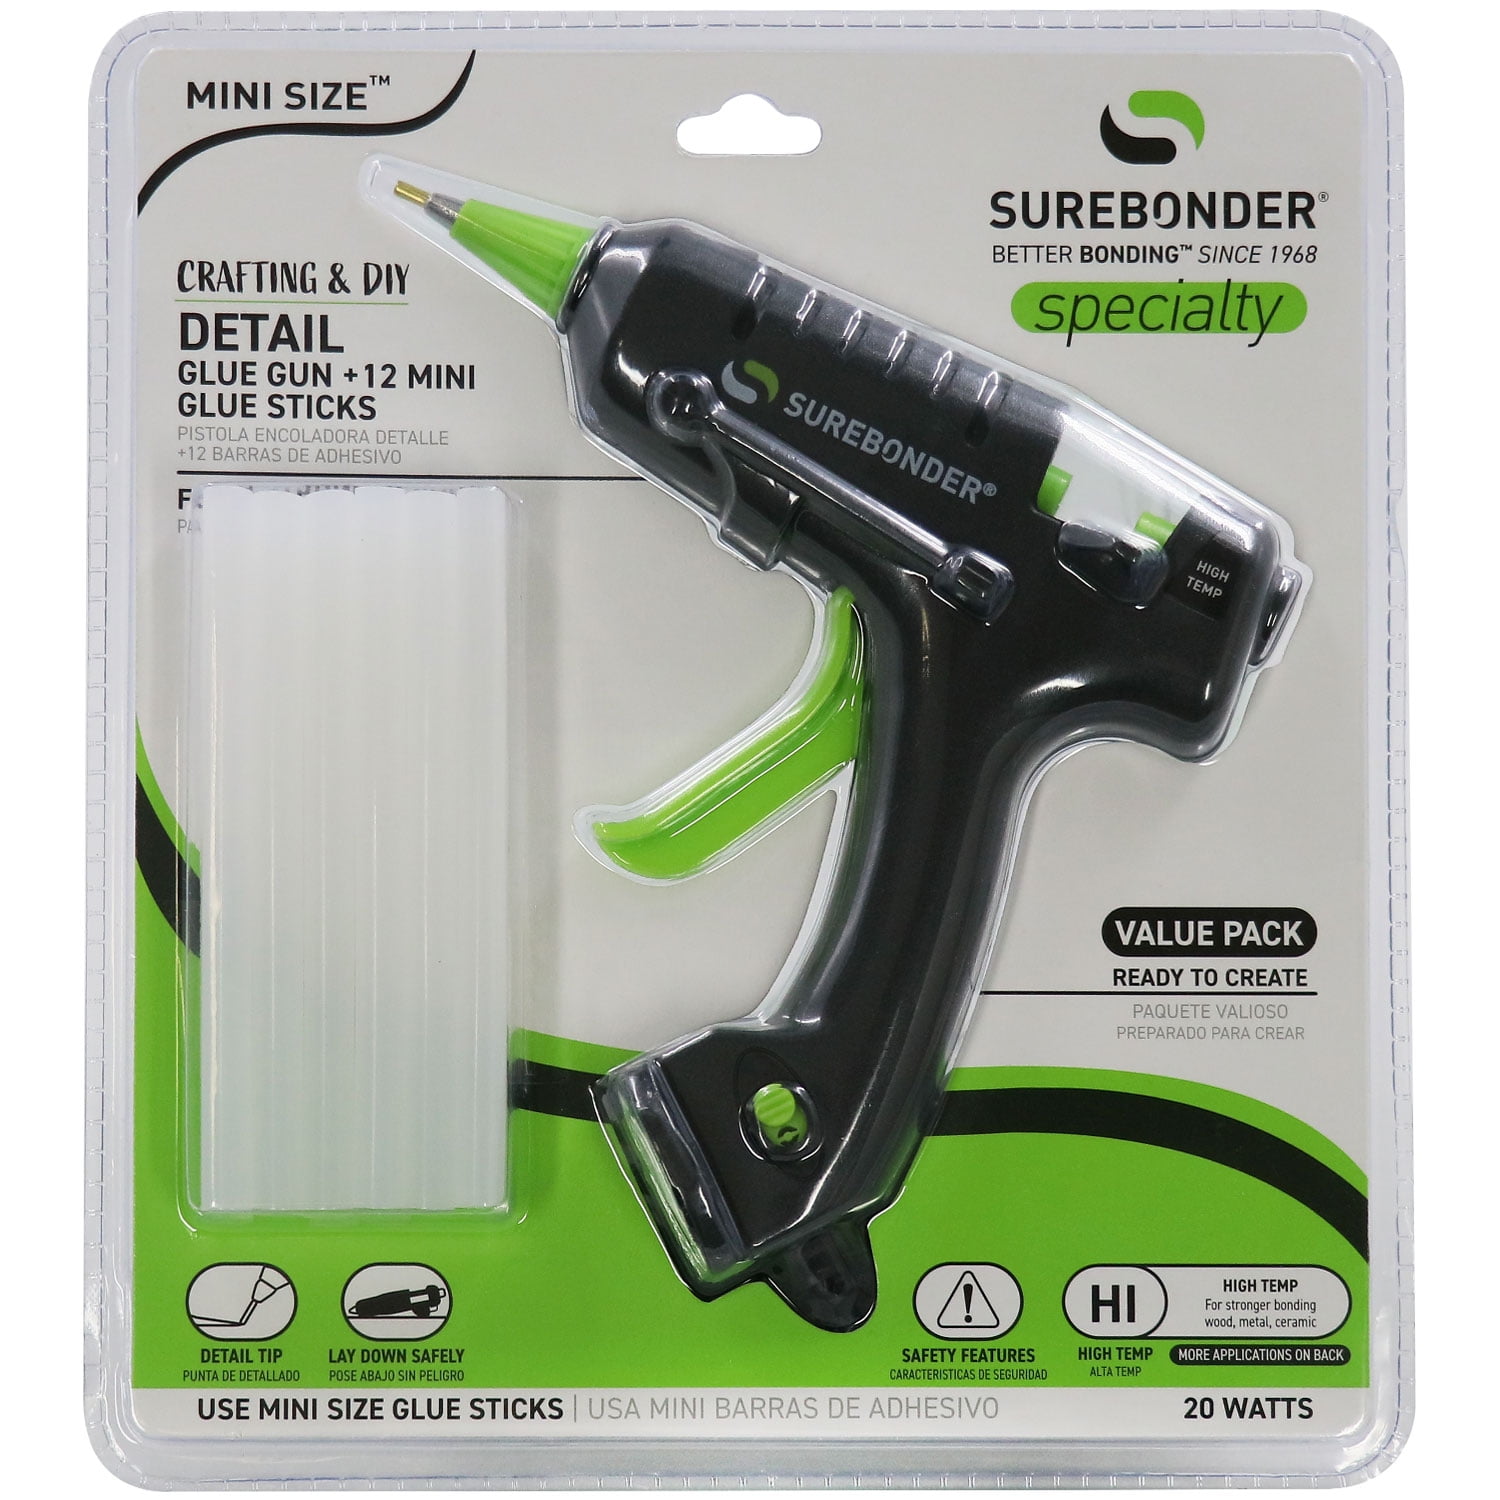 Dot & Dab Glue Gun Sticks - Mini 24pk